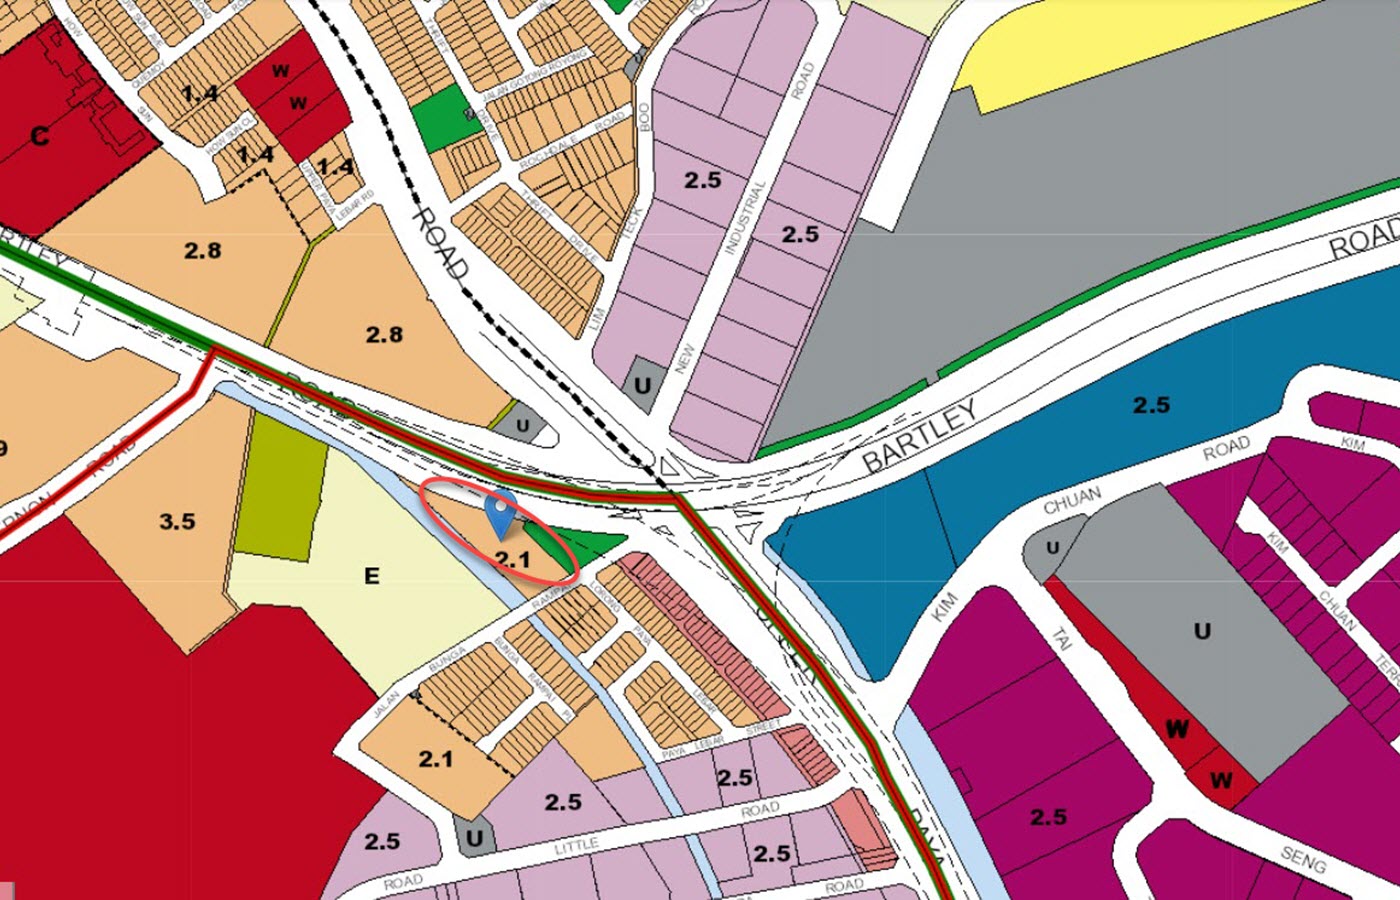 Bartley Vue Condo Location - URA Master Plan Map